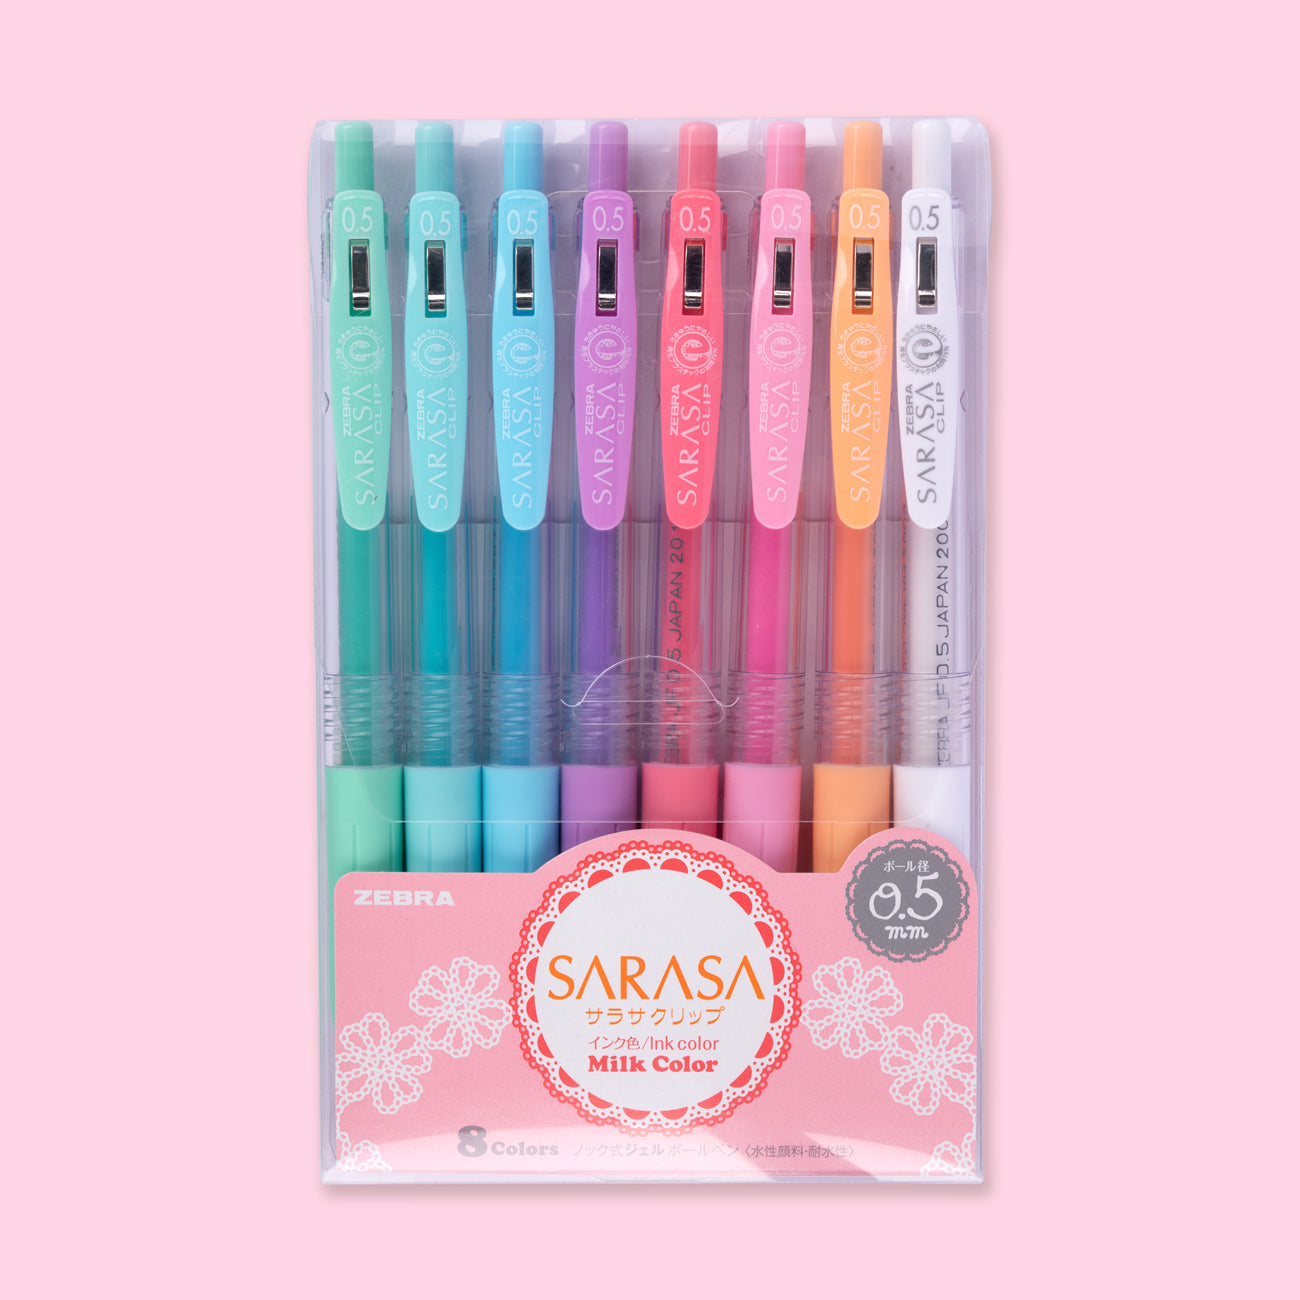 Cool Pens: 8-Color Pens